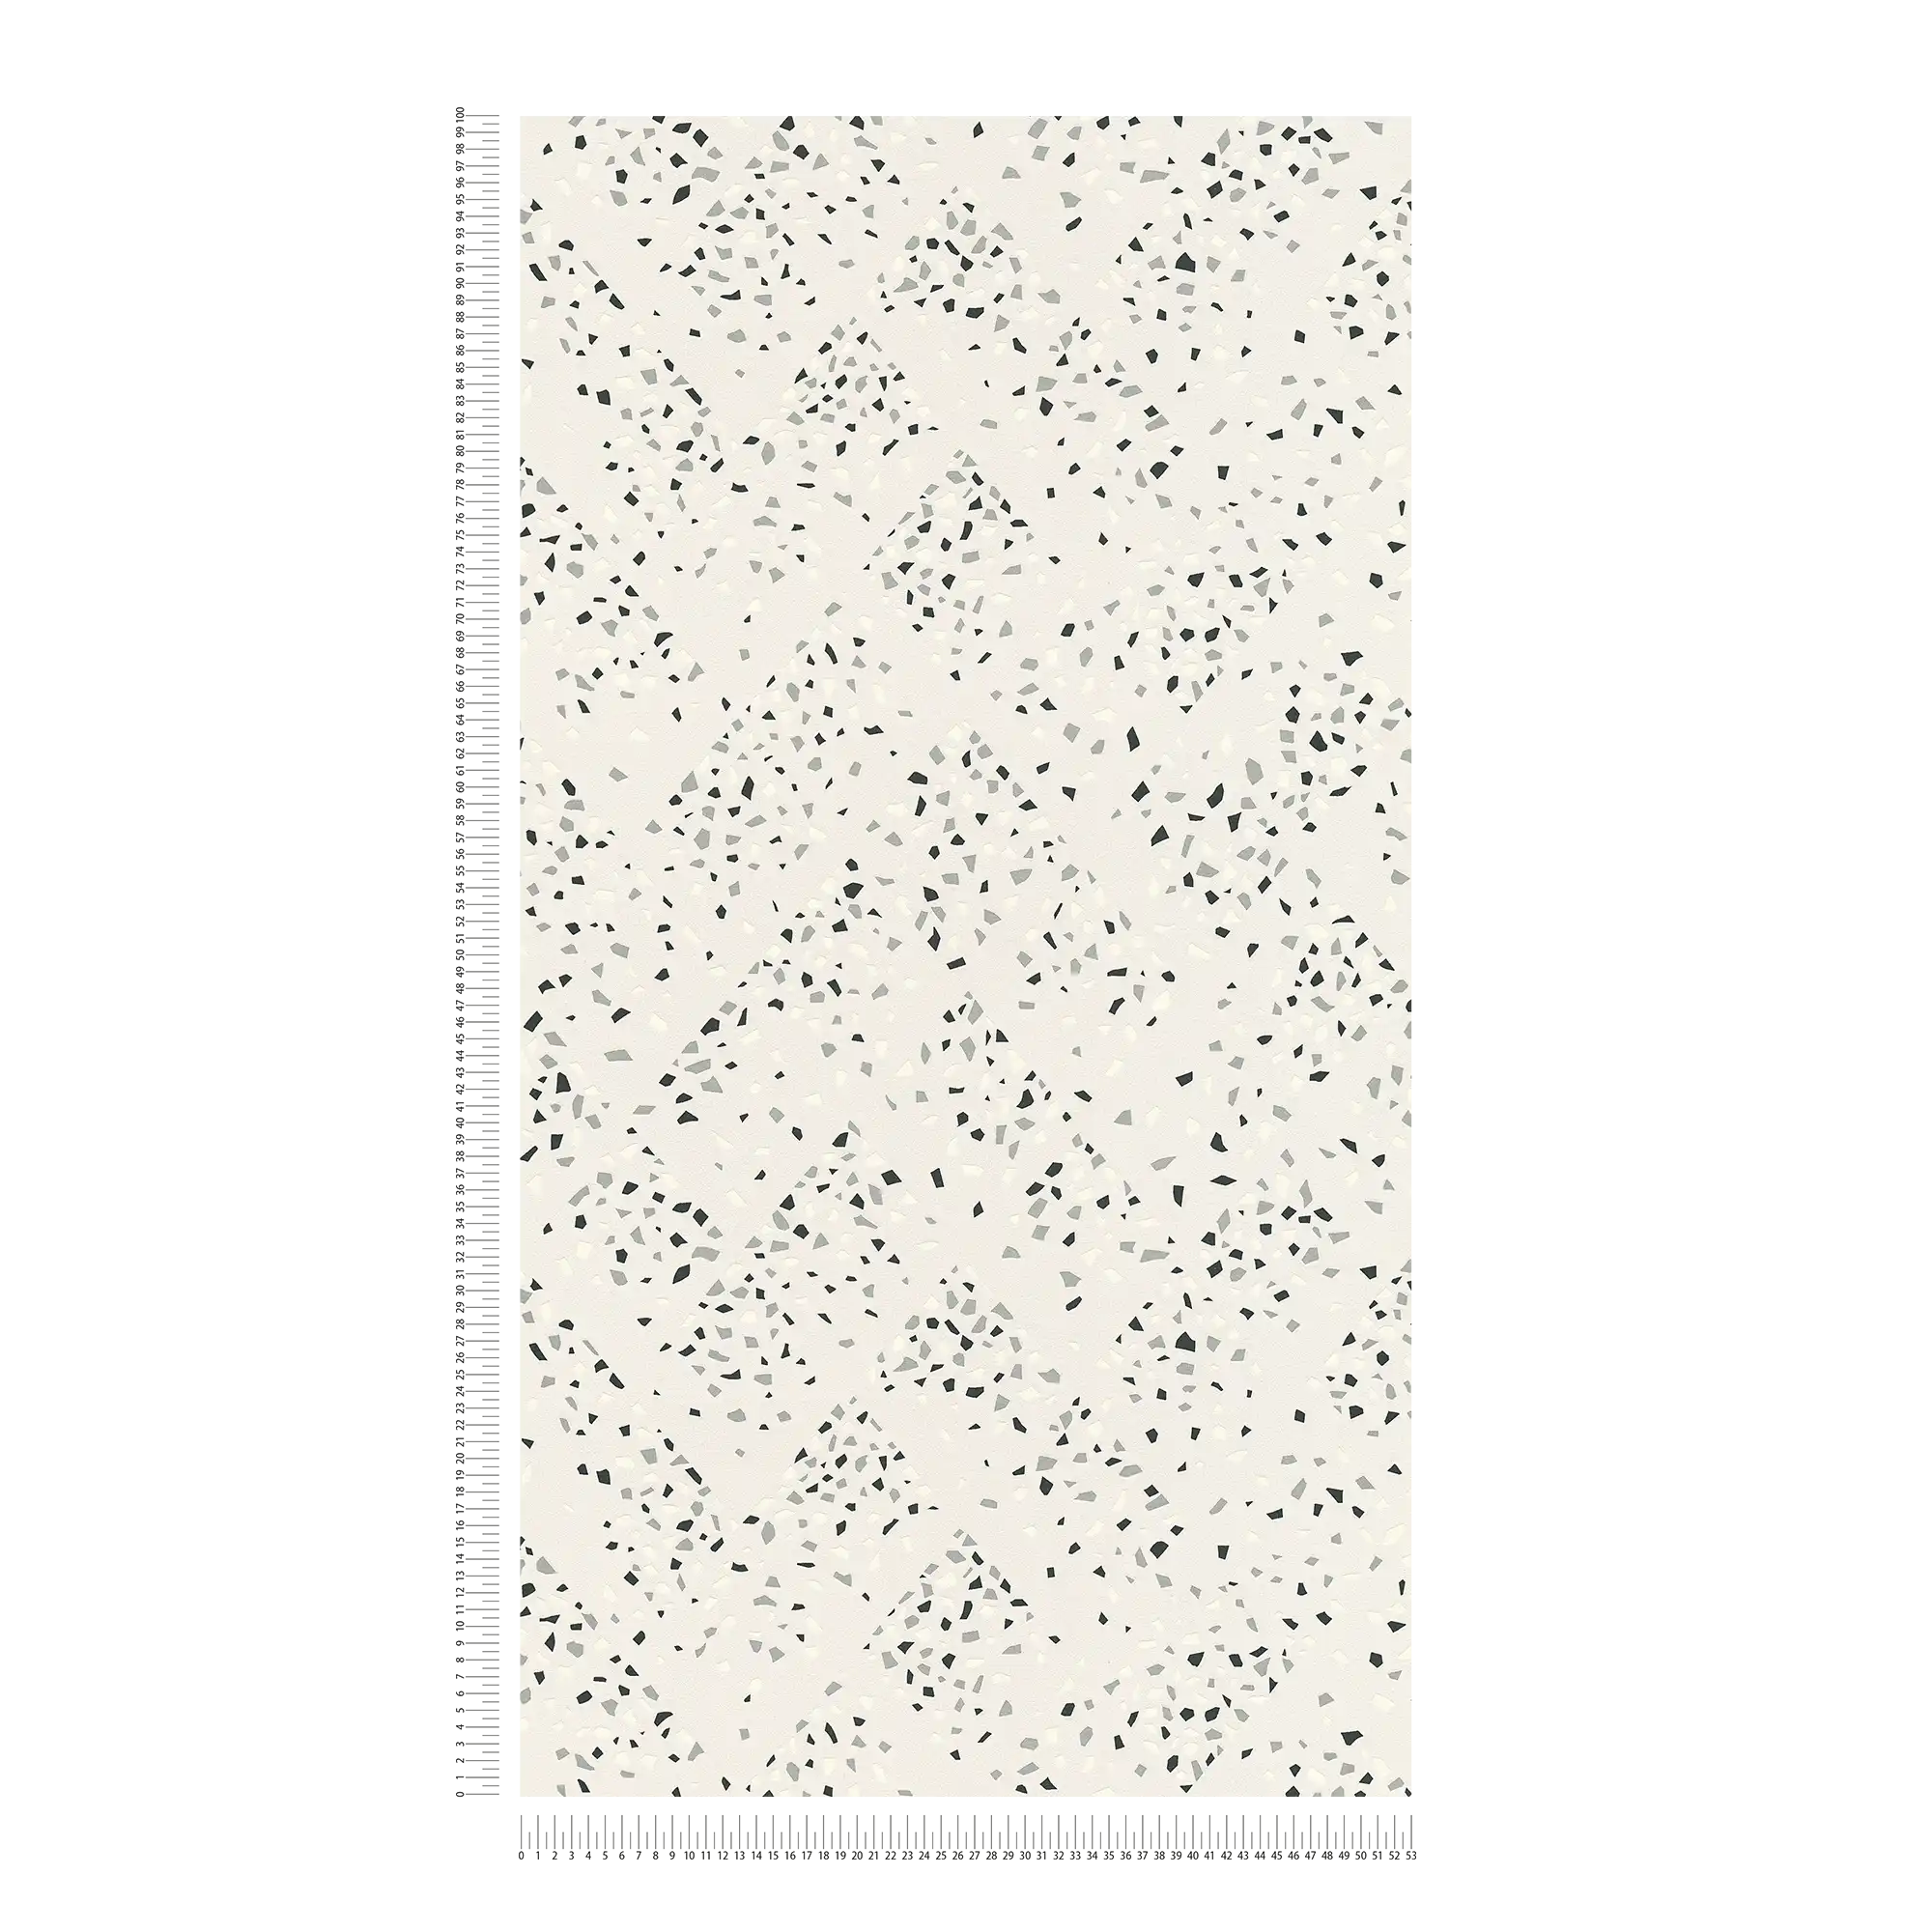             behang terrazzo patroon & metallic effect - wit, zwart, zilver
        